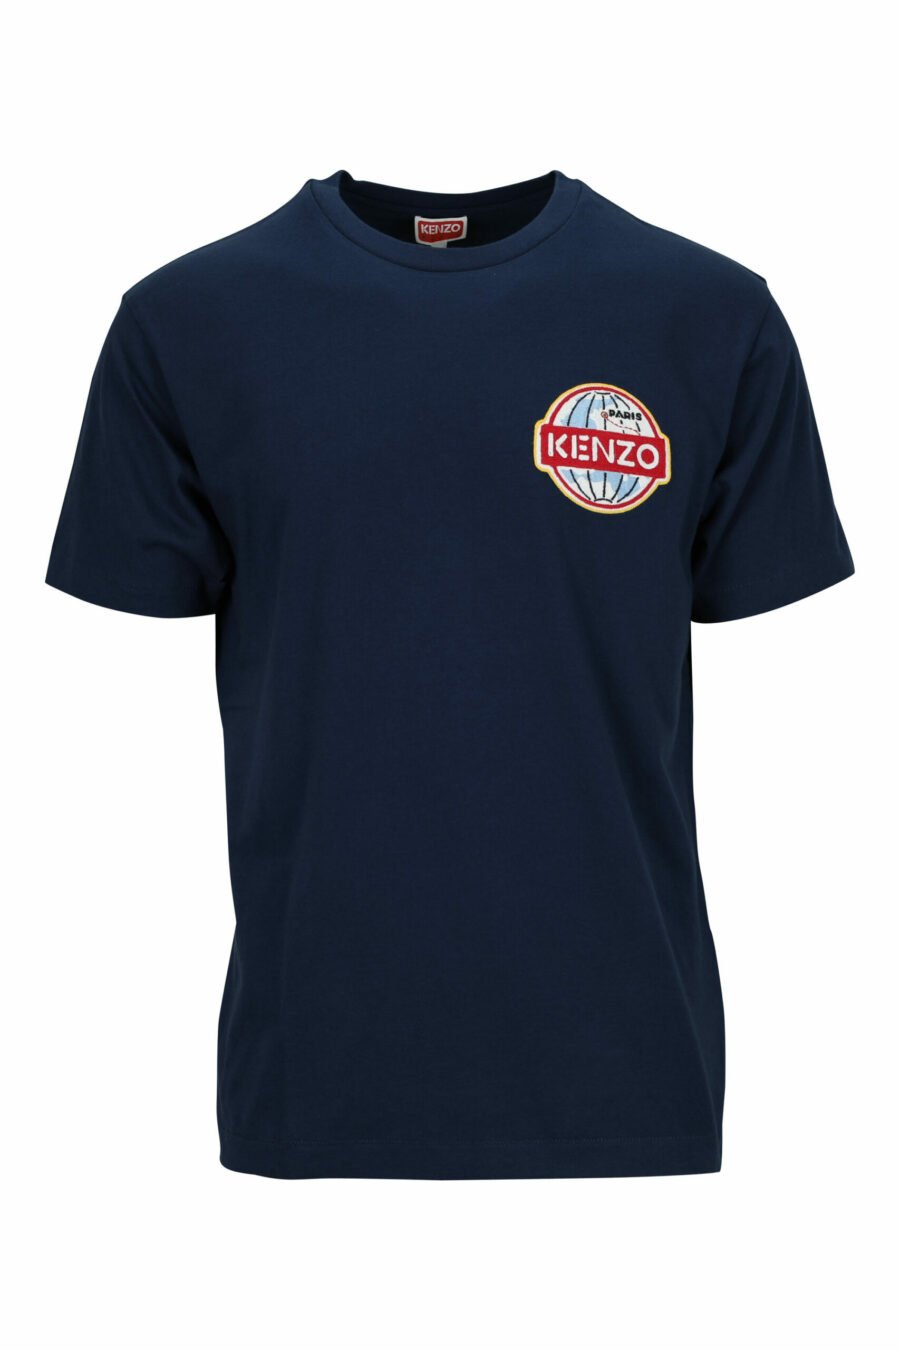 Camiseta azul con minilogo redondo "Kenzo" - 3612230544475 scaled